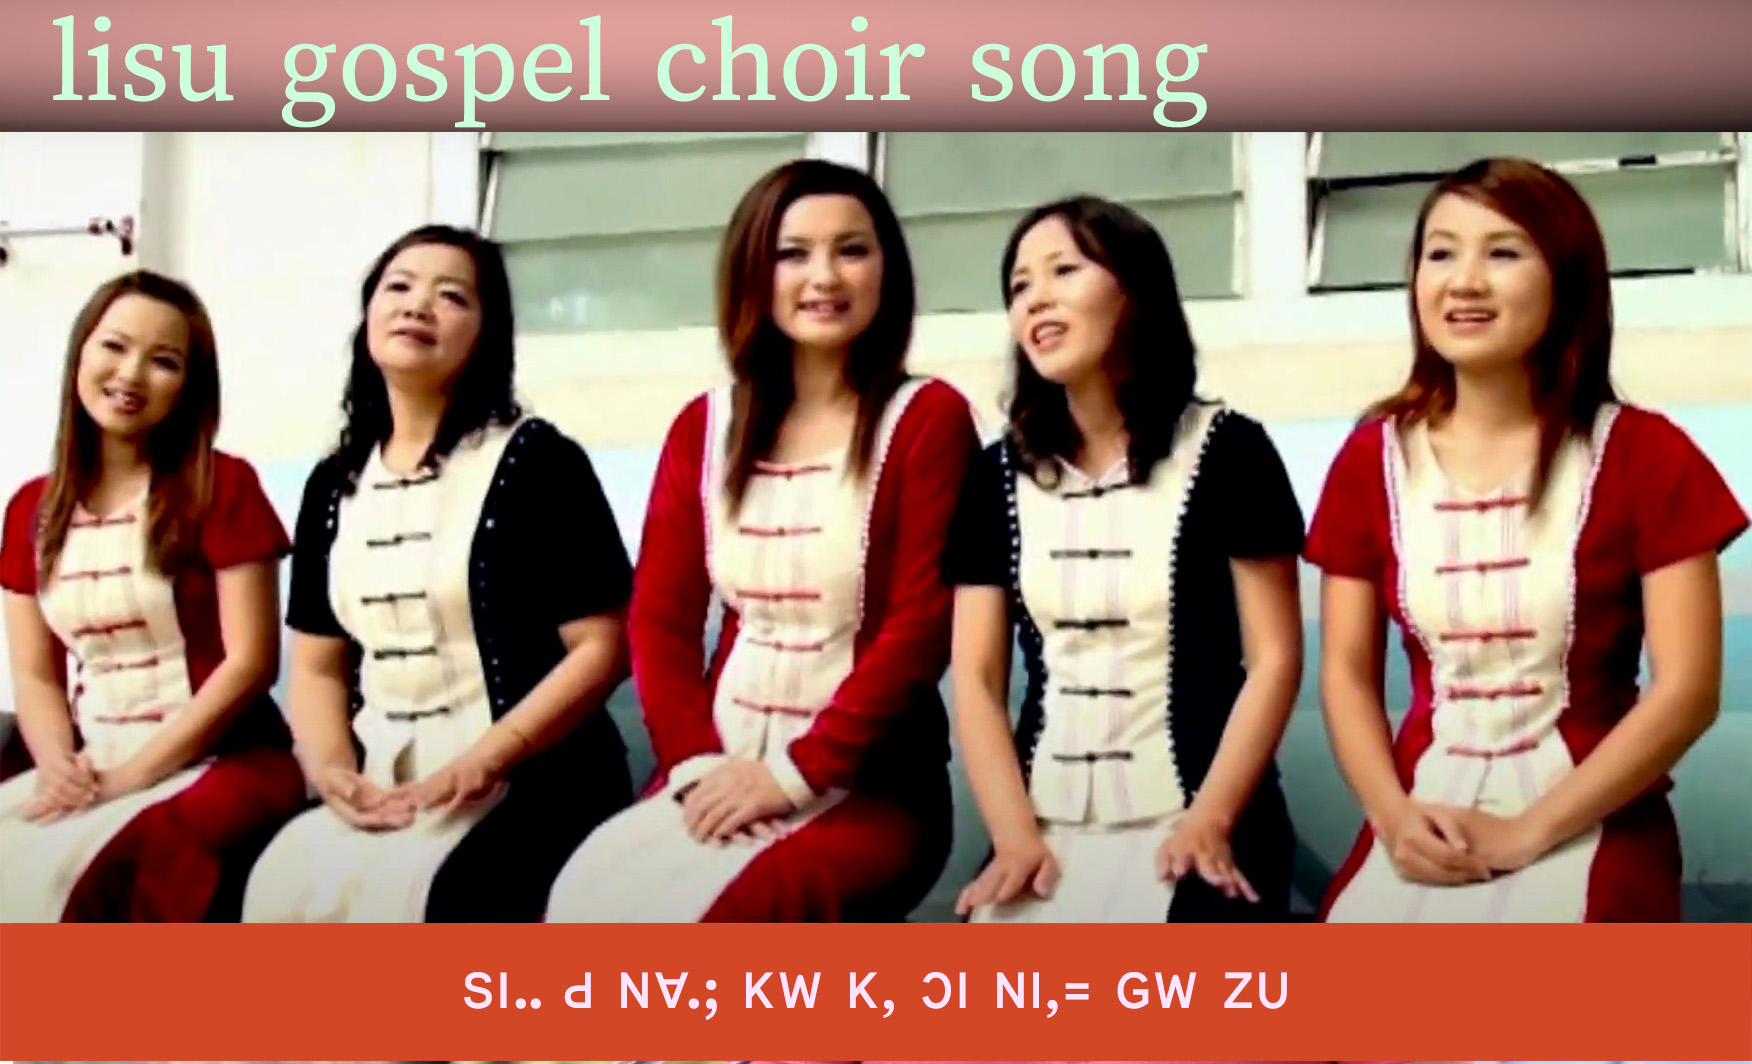 lisu gospel song ꓢꓲꓺ ꓒ ꓠꓯꓸꓼ ꓗꓪ ꓗ, ꓛꓲ ꓠꓲ,꓿ ꓖꓪ꓾ ꓜꓴ || Lisu gospel choir songs